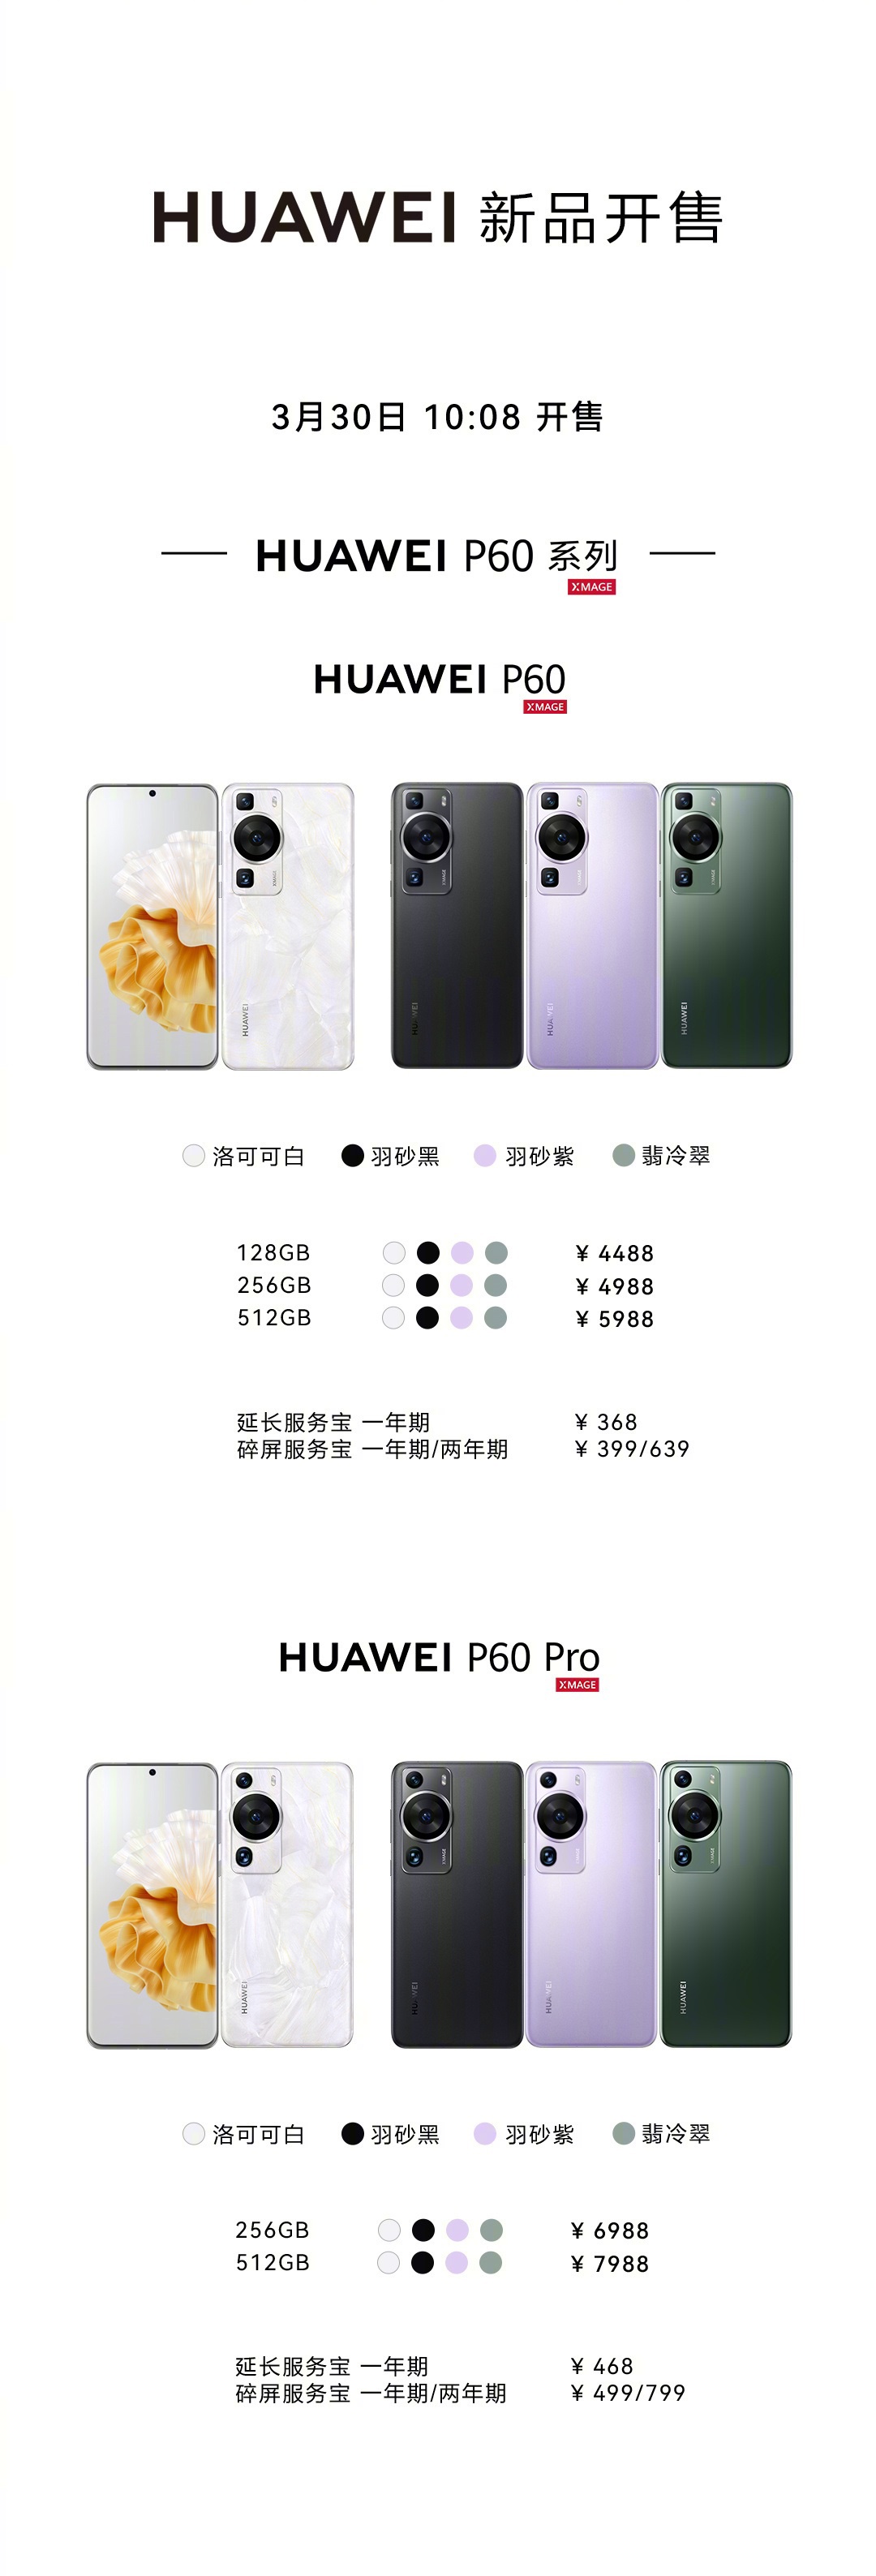 《华为 P60》系列手机正式发售：售价4488元，超聚光 XMAGE 影像